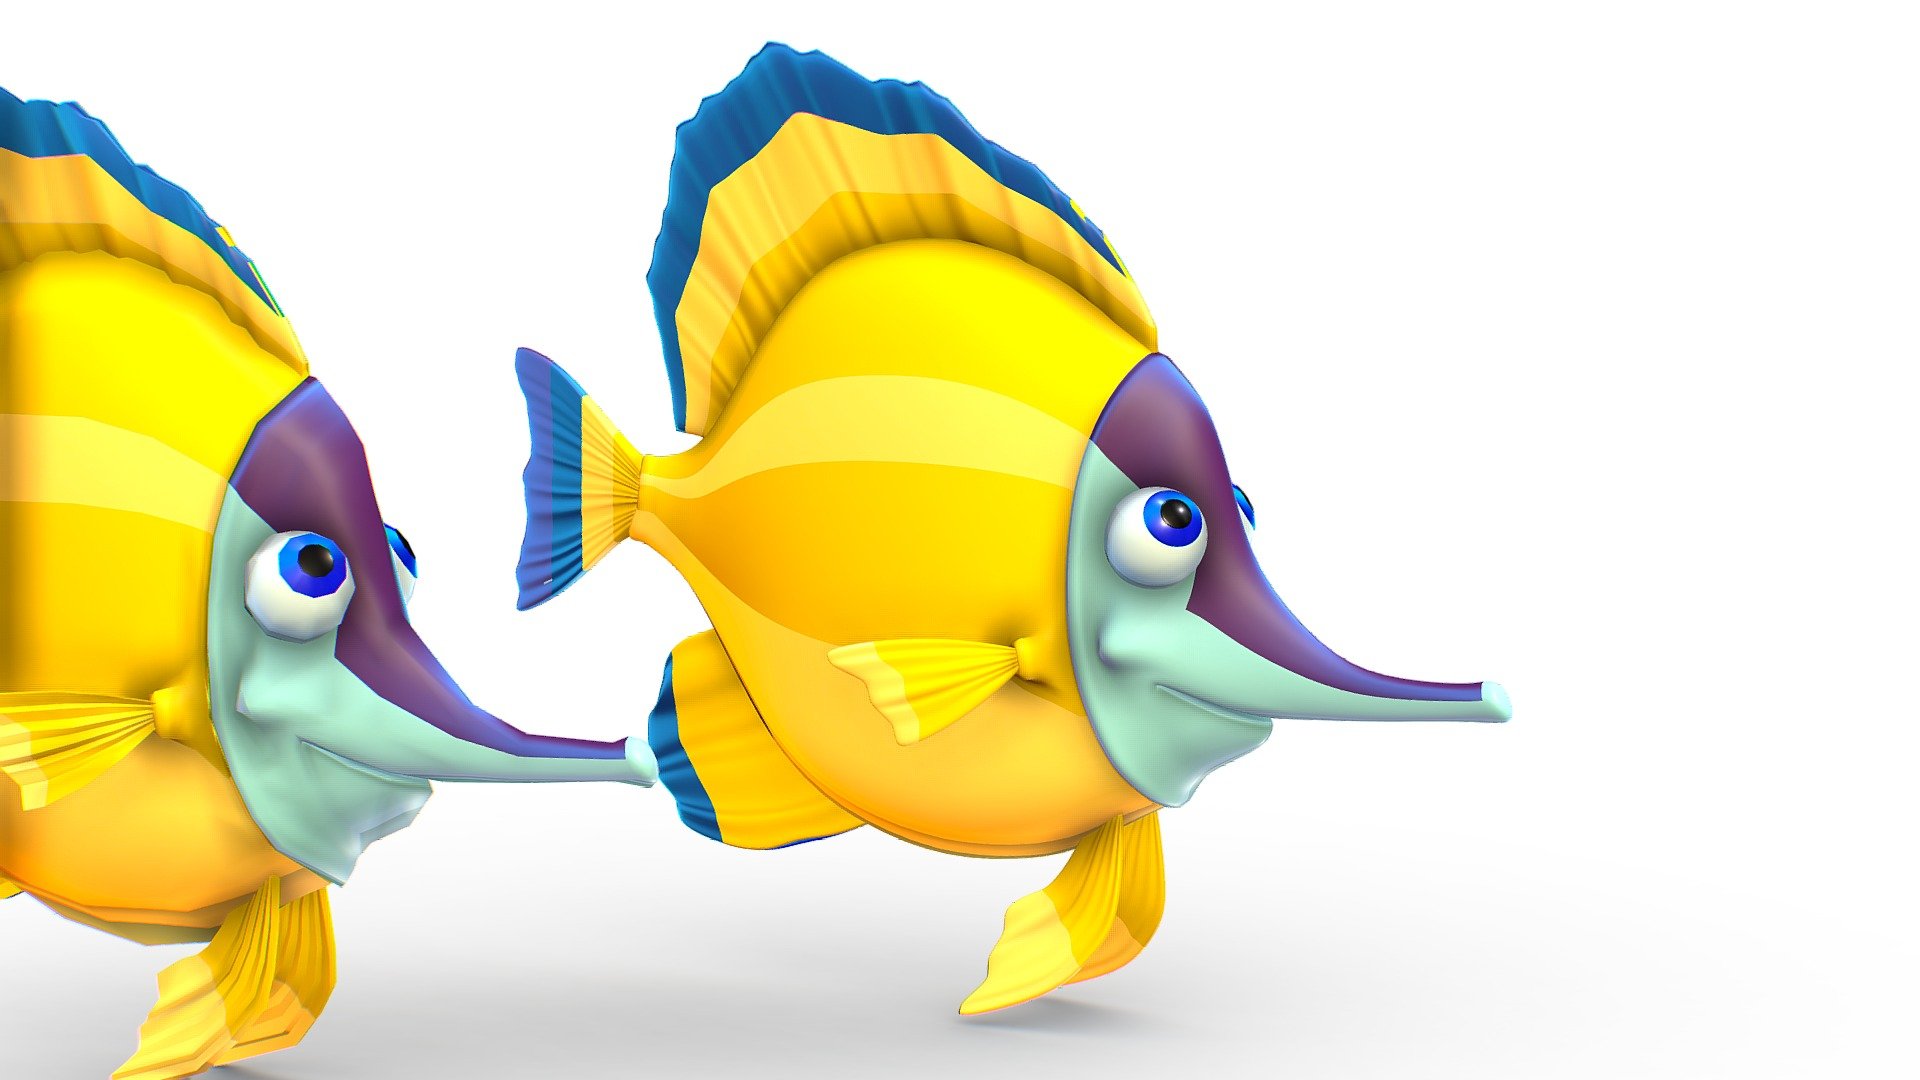 Hi-Poly Subdivision 3D Model Fish - Maya File encluded - Hi-Poly Subdivision 3D Model Fish - Buy Royalty Free 3D model by Oleg Shuldiakov (@olegshuldiakov) 3d model